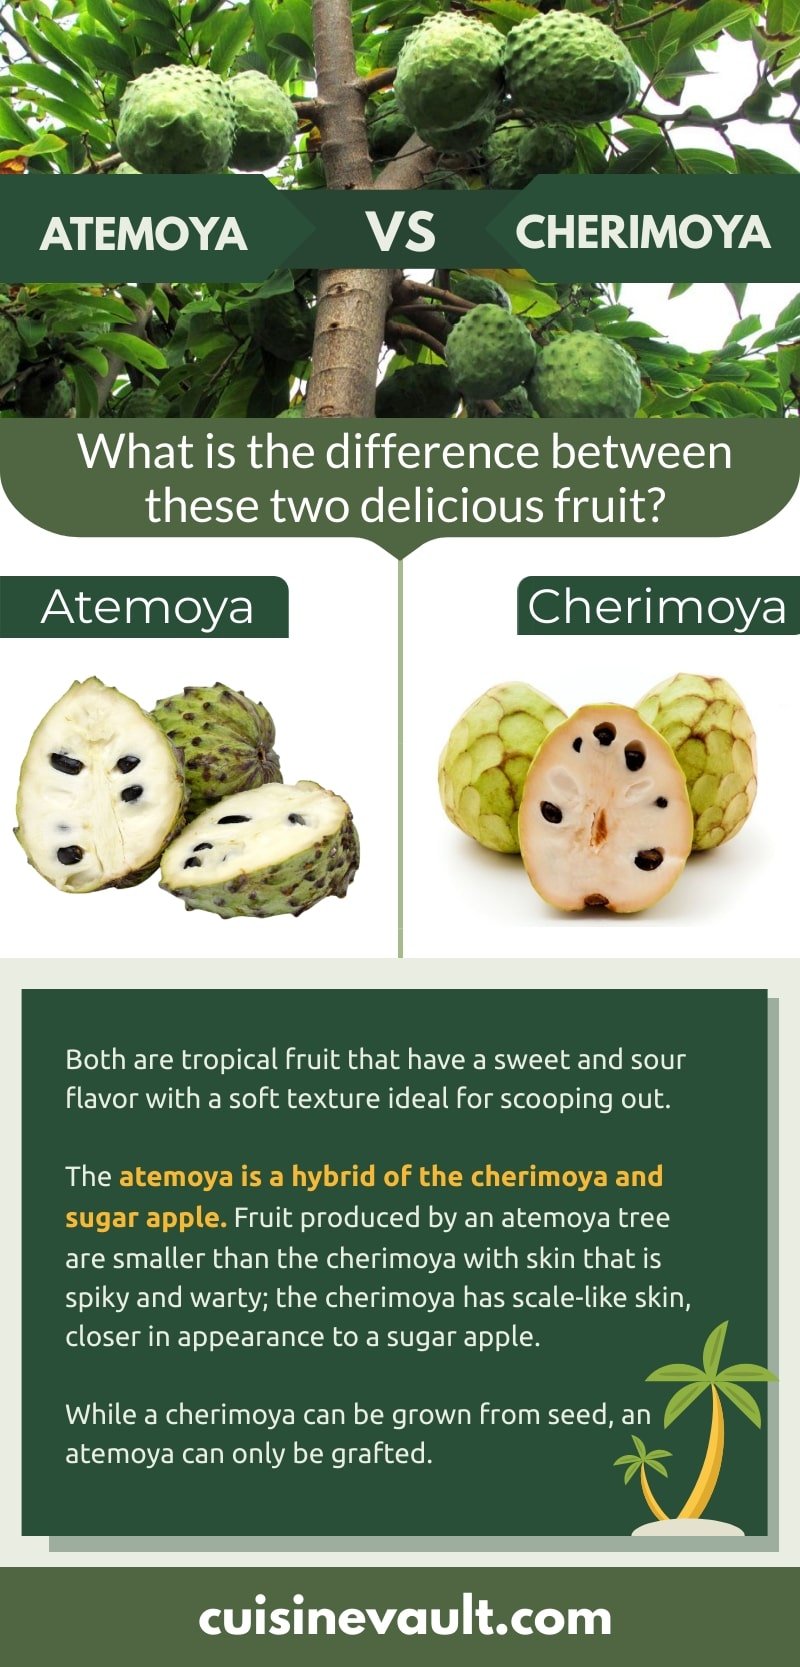 Atemoya vs. cherimoya infographic